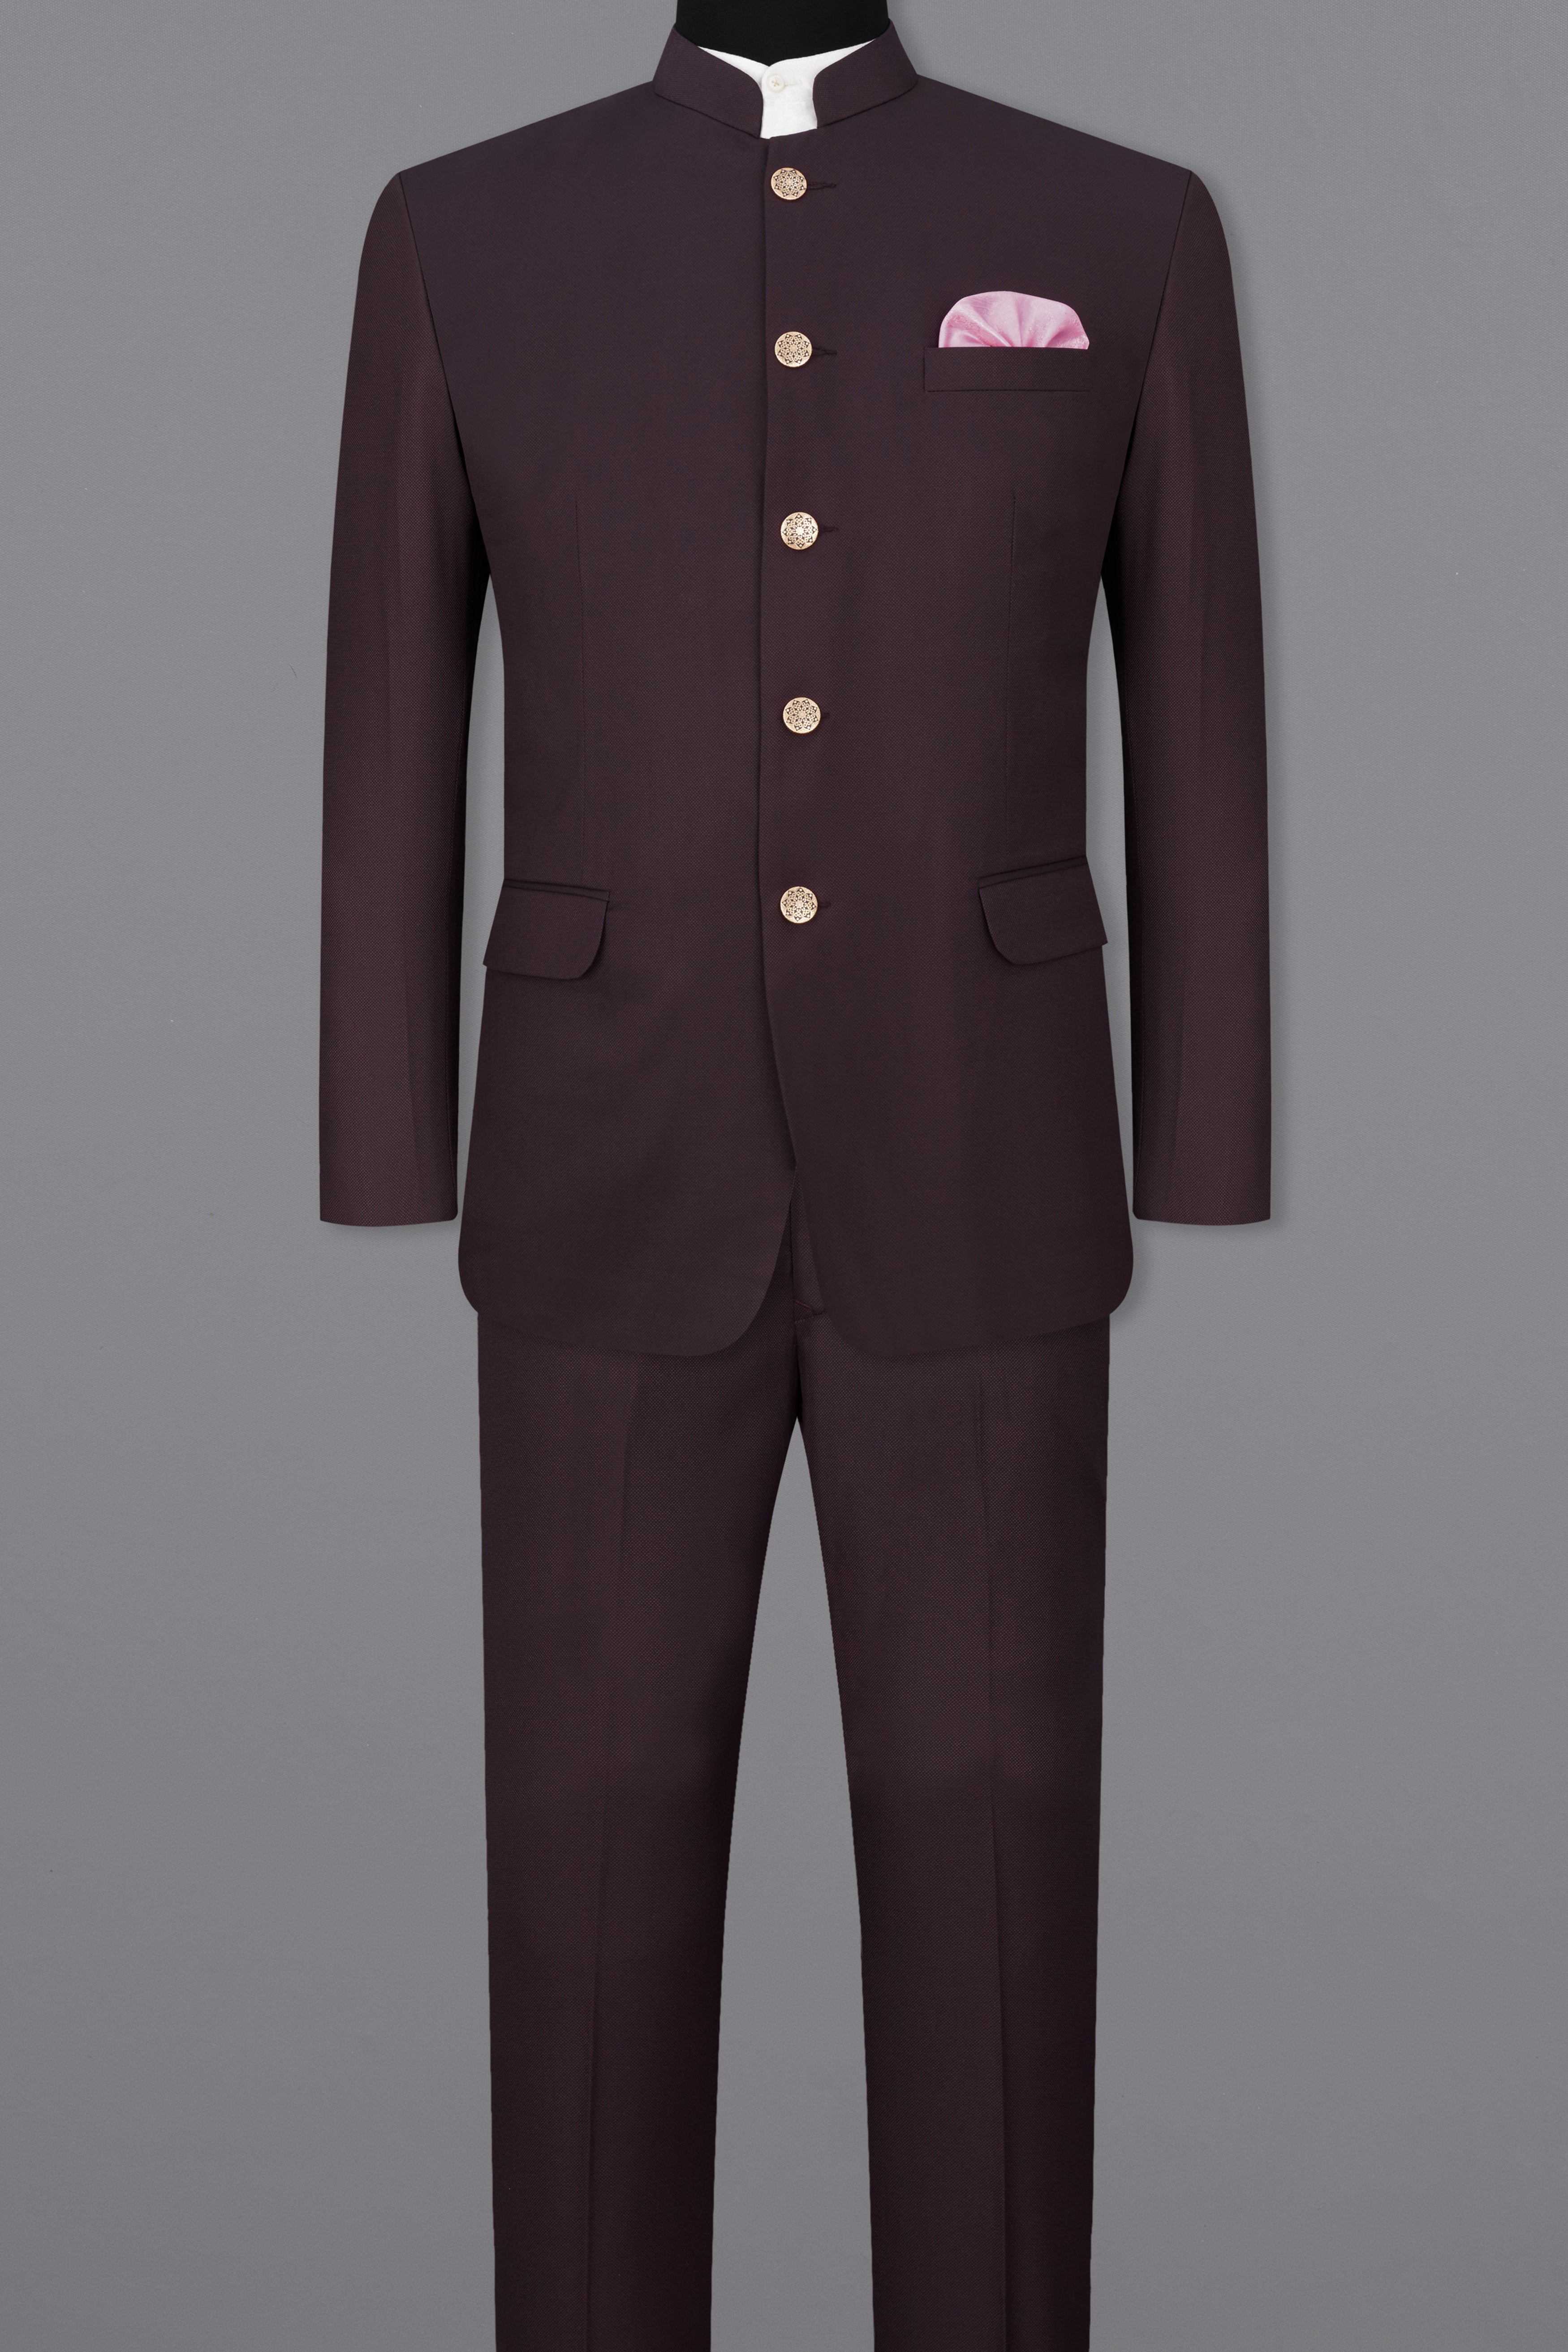 Aubergine Maroon Bandhgala Suit